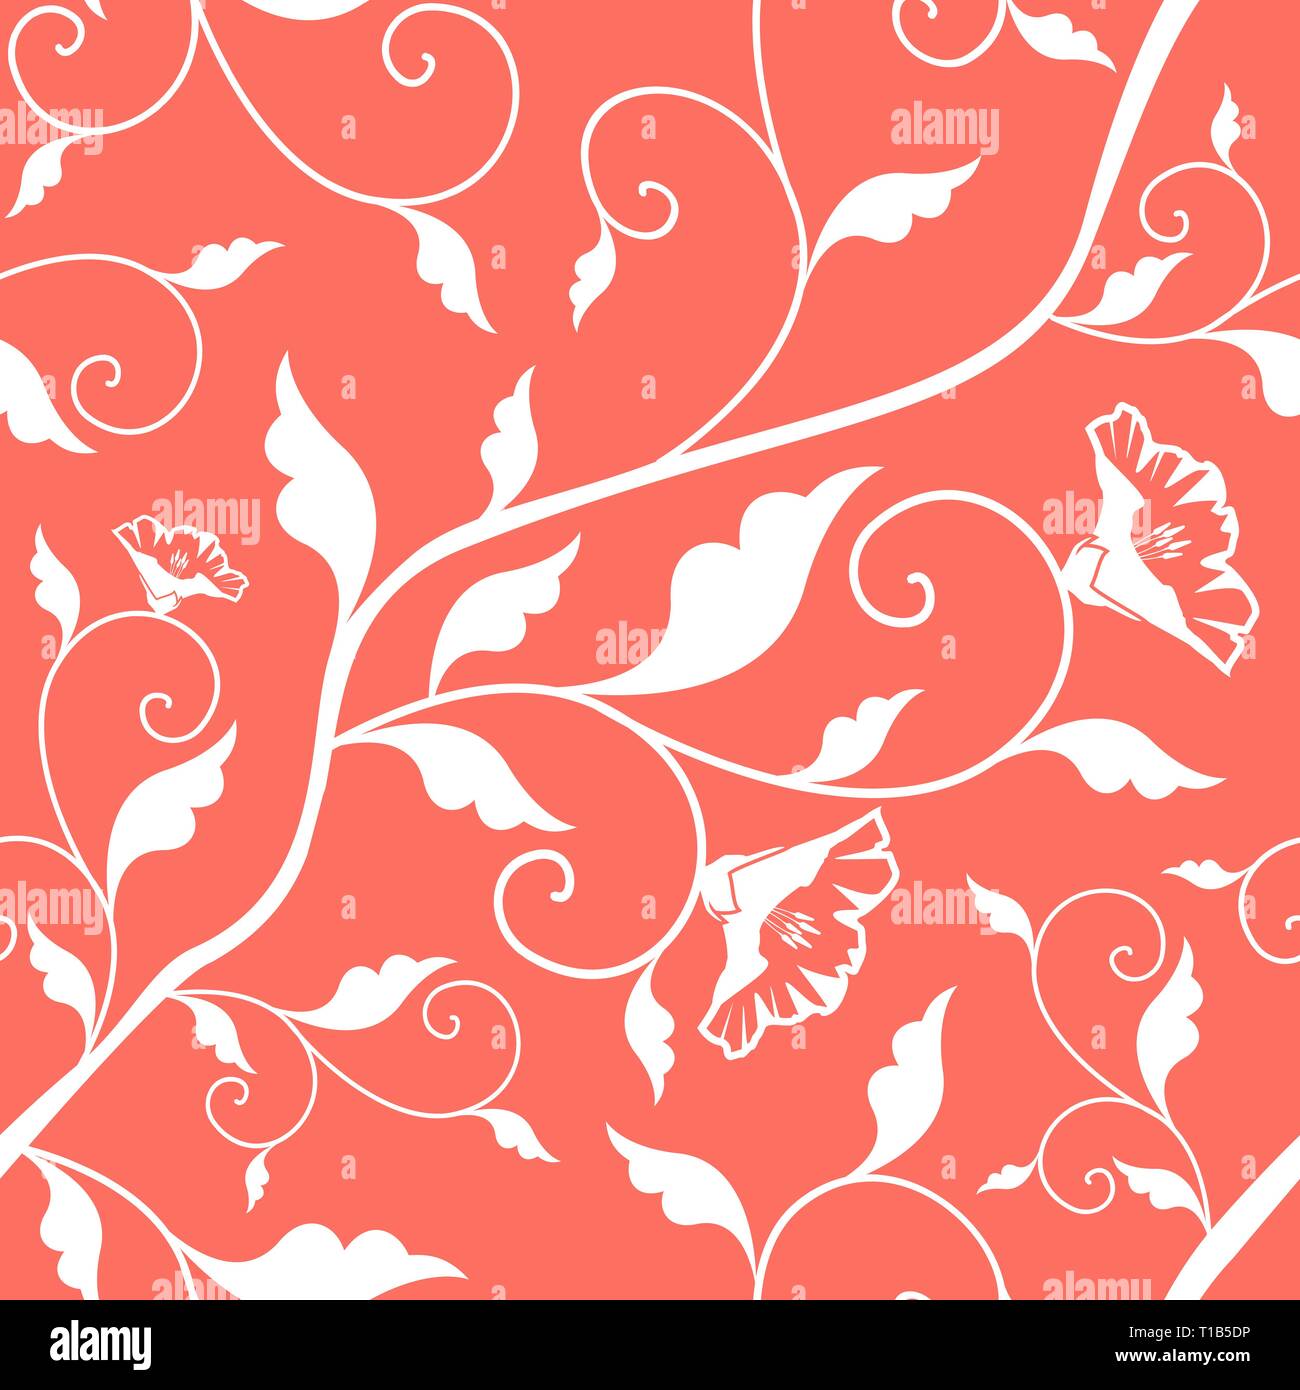 Coral Pink Vector Nahtlose floralen Muster. Lebende Korallen - 2019 Farbe des Jahres. Blätter und Blüten weiß Textur. Wiederholen Damast Hintergrund Stock Vektor